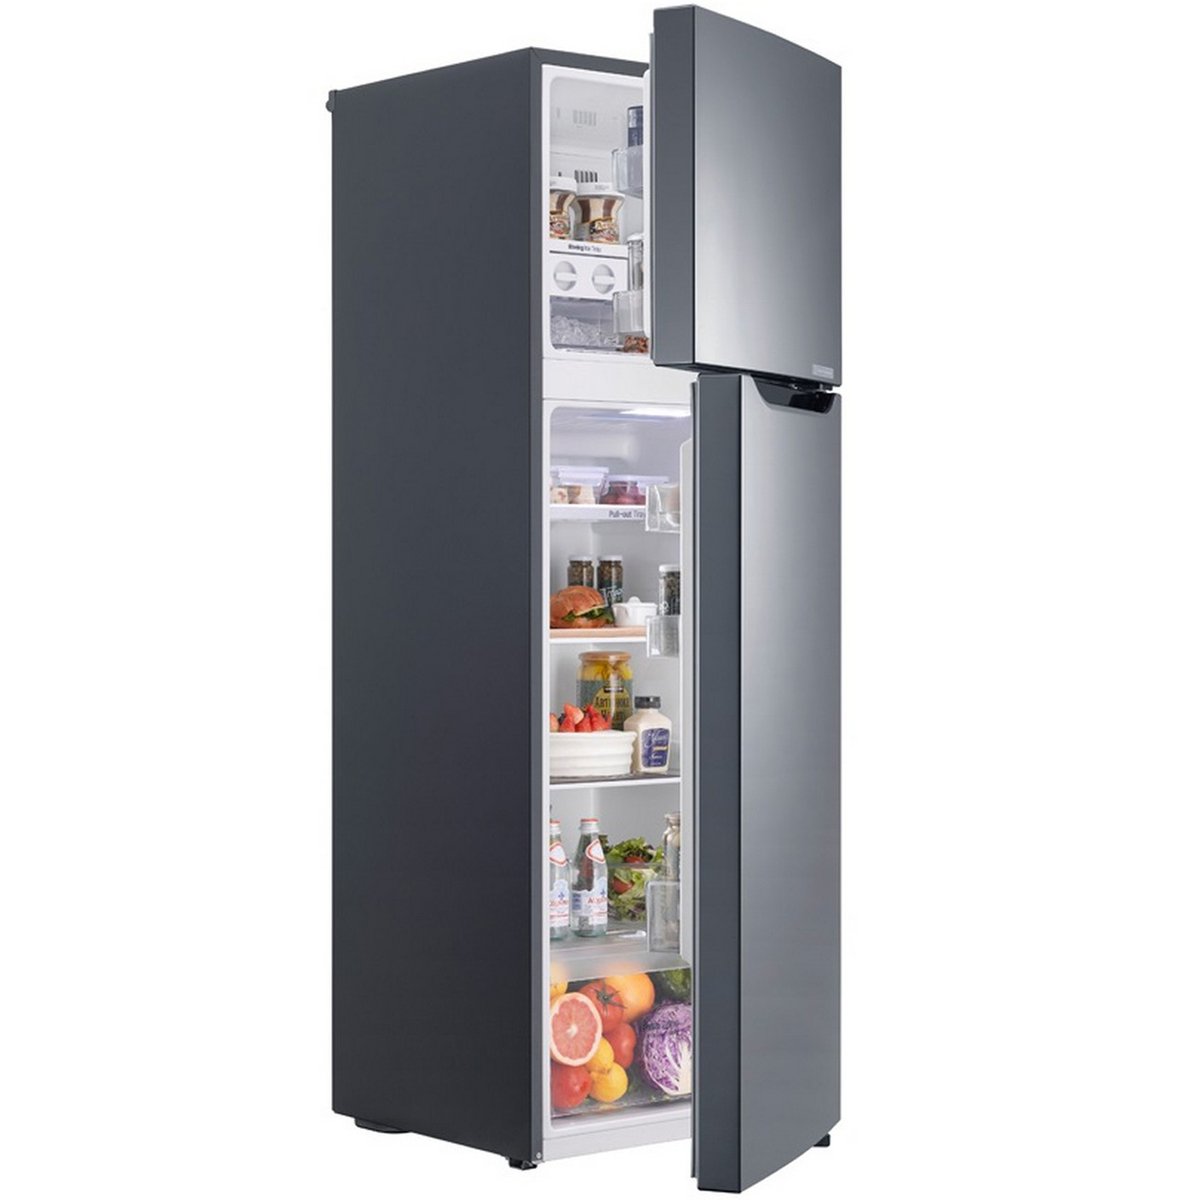 LG Double Door Refrigerator GR-B302SLHL 290Ltr